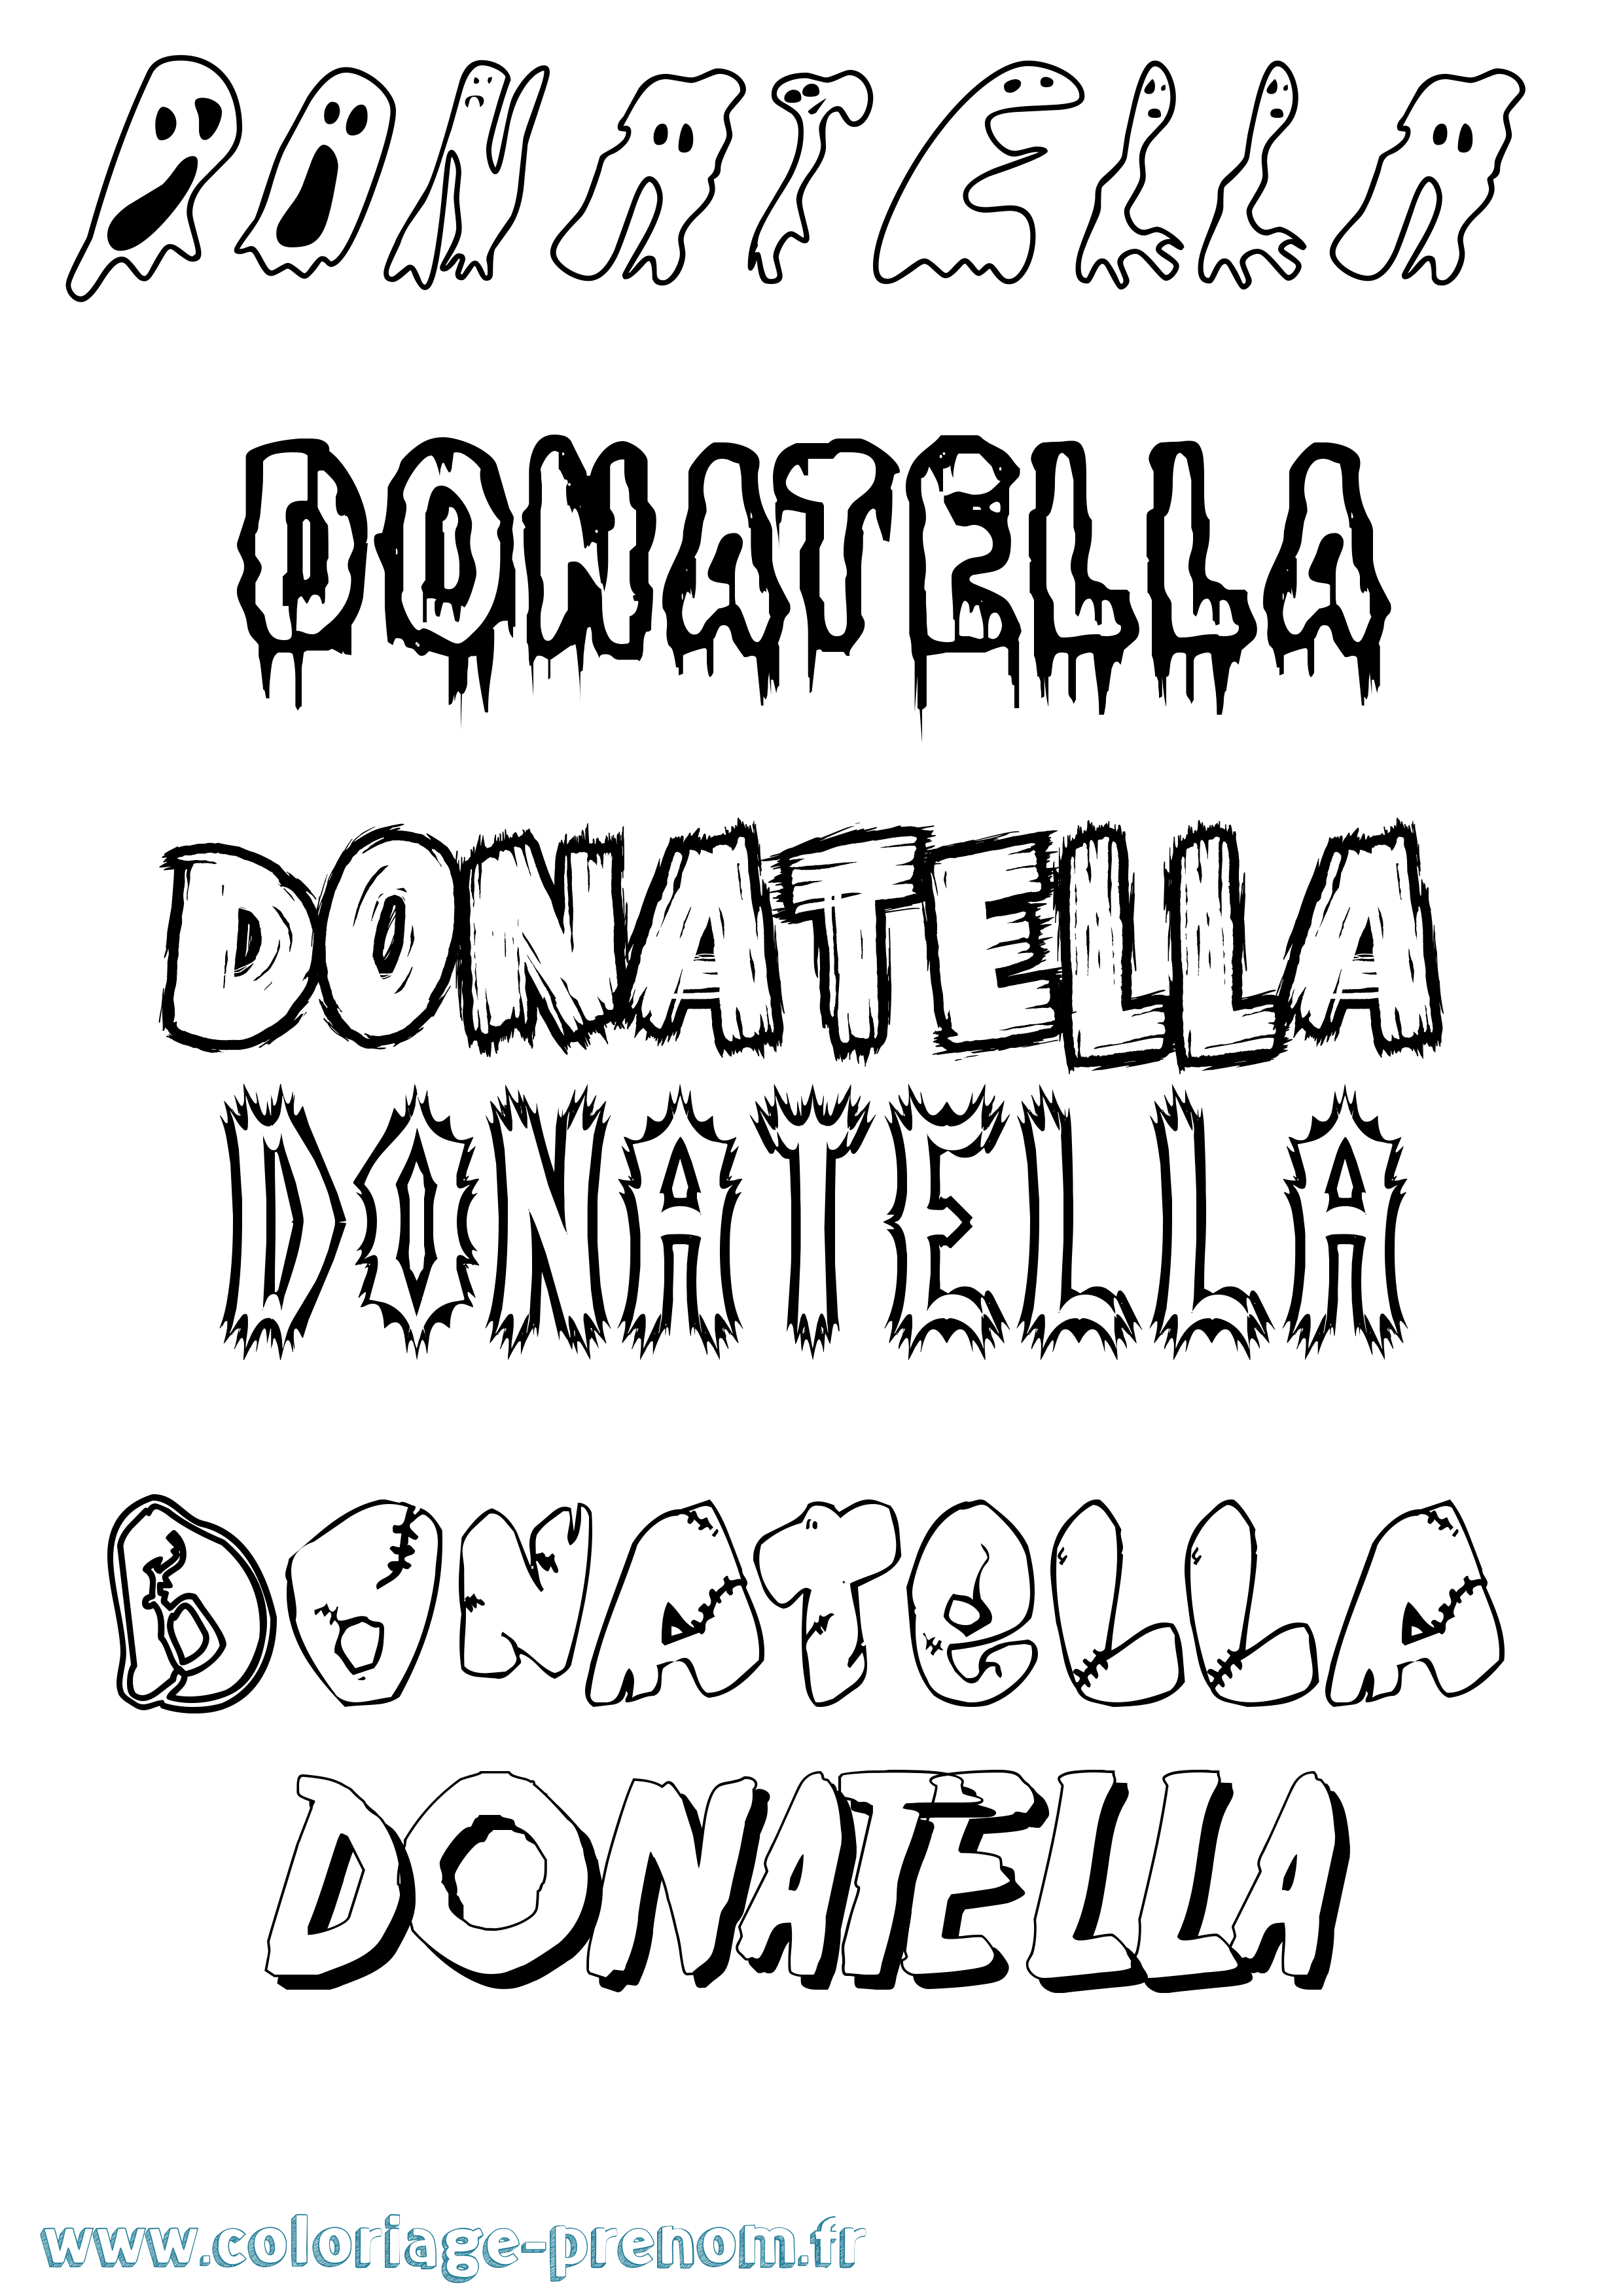 Coloriage prénom Donatella Frisson